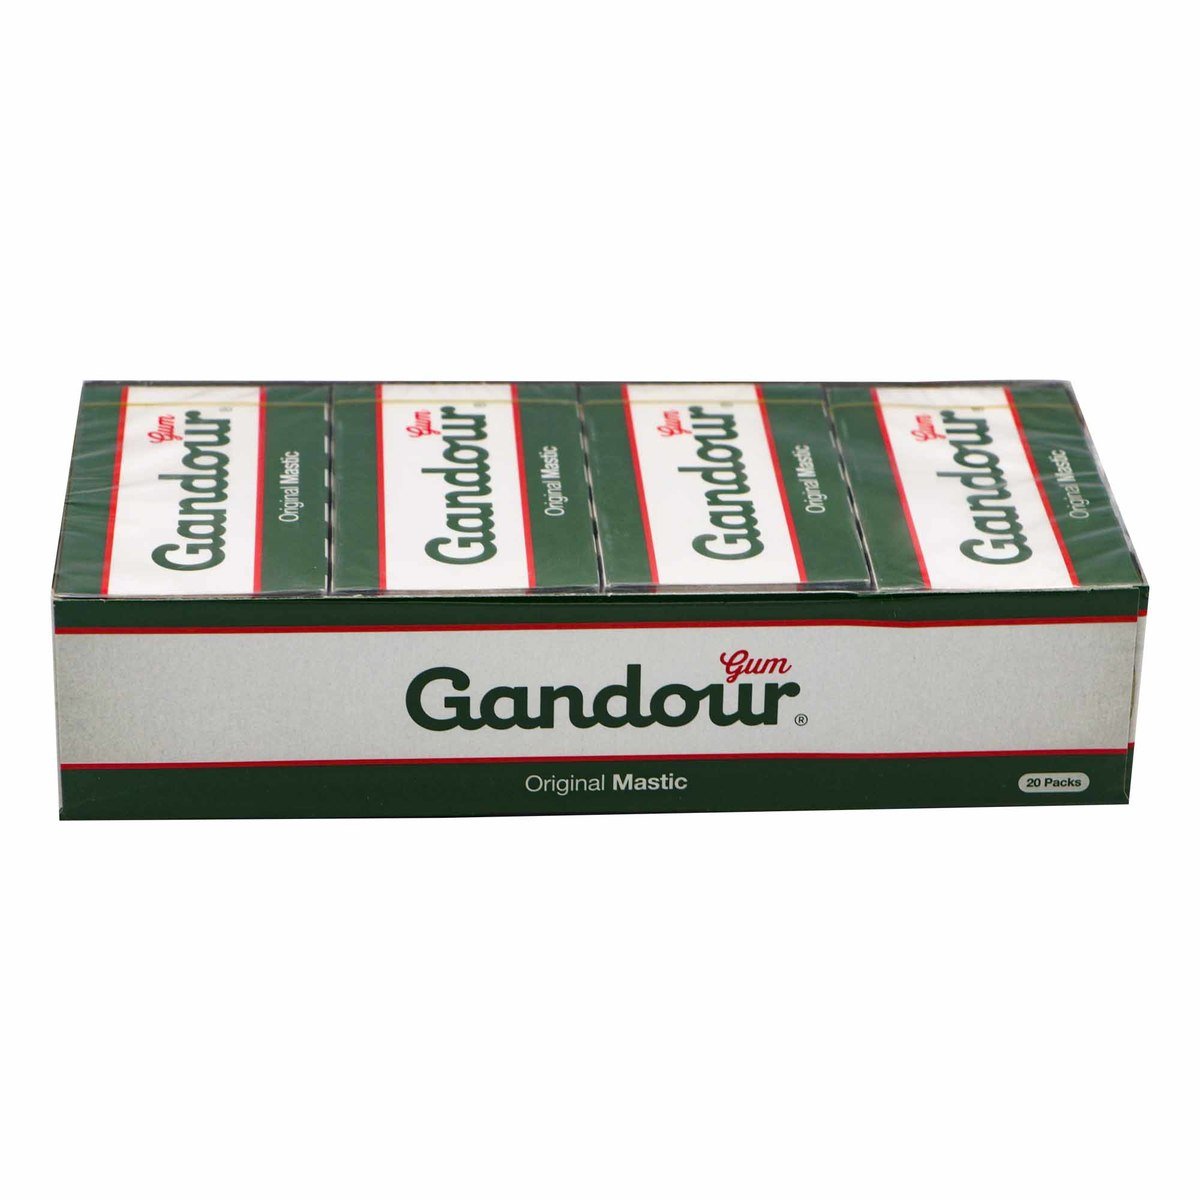 Gandour Original Mastic Gum 20 x 10.8g